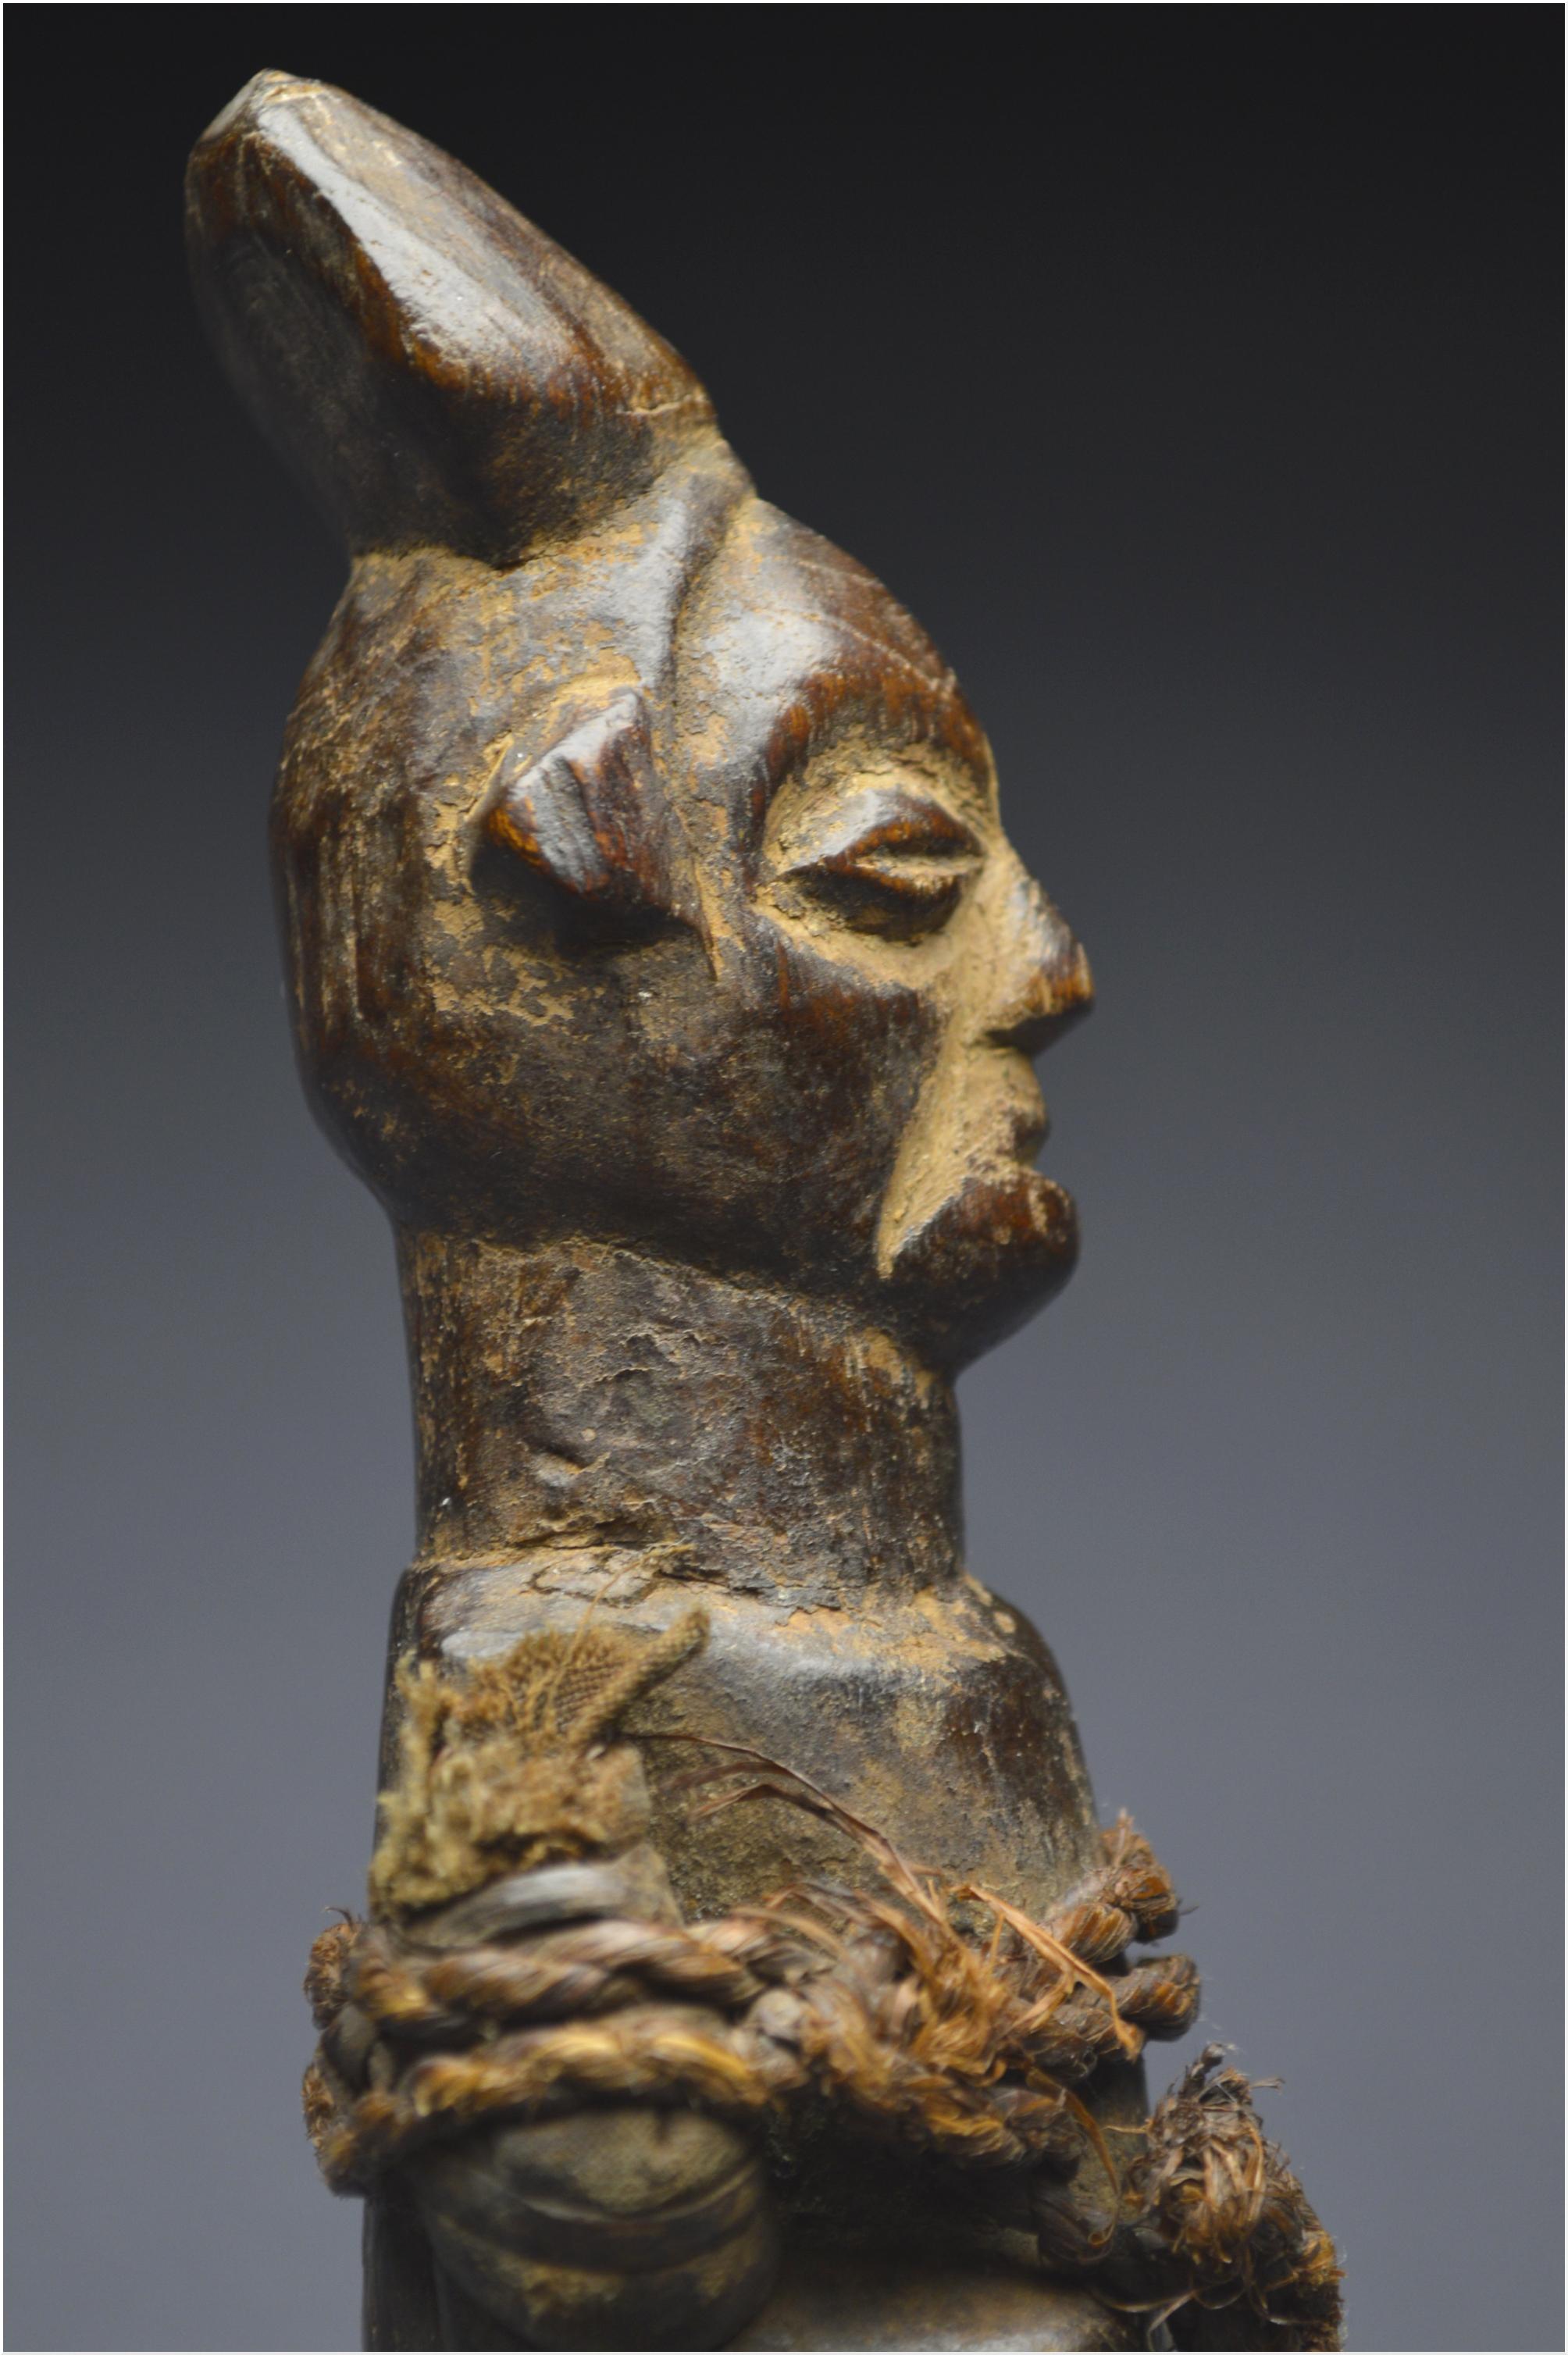 Mid-20th Century, Dem. Rep. Congo, Teke Culture, Ancient Ancestor Fetish 4